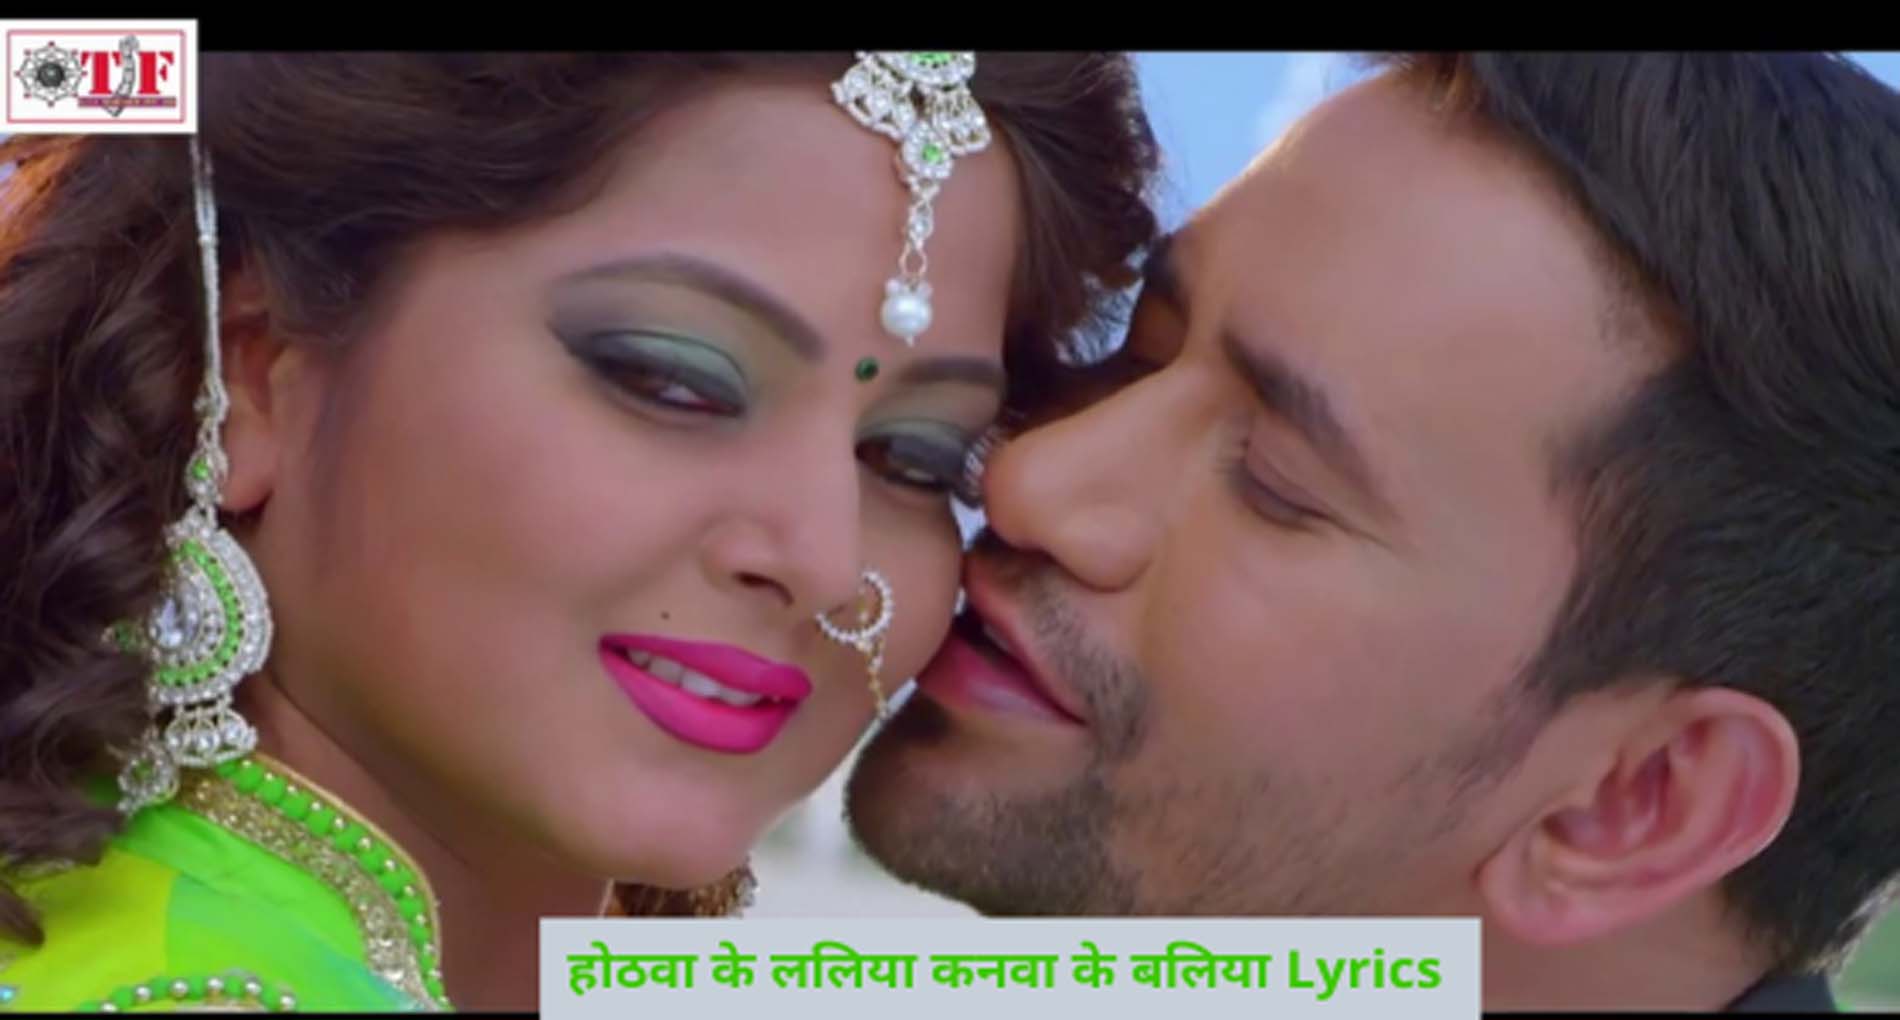 निरहुआ और अंजना सिंह ने गाने में उड़ाया गर्दा! देखें जबरदस्त रोमांटिक वीडियो